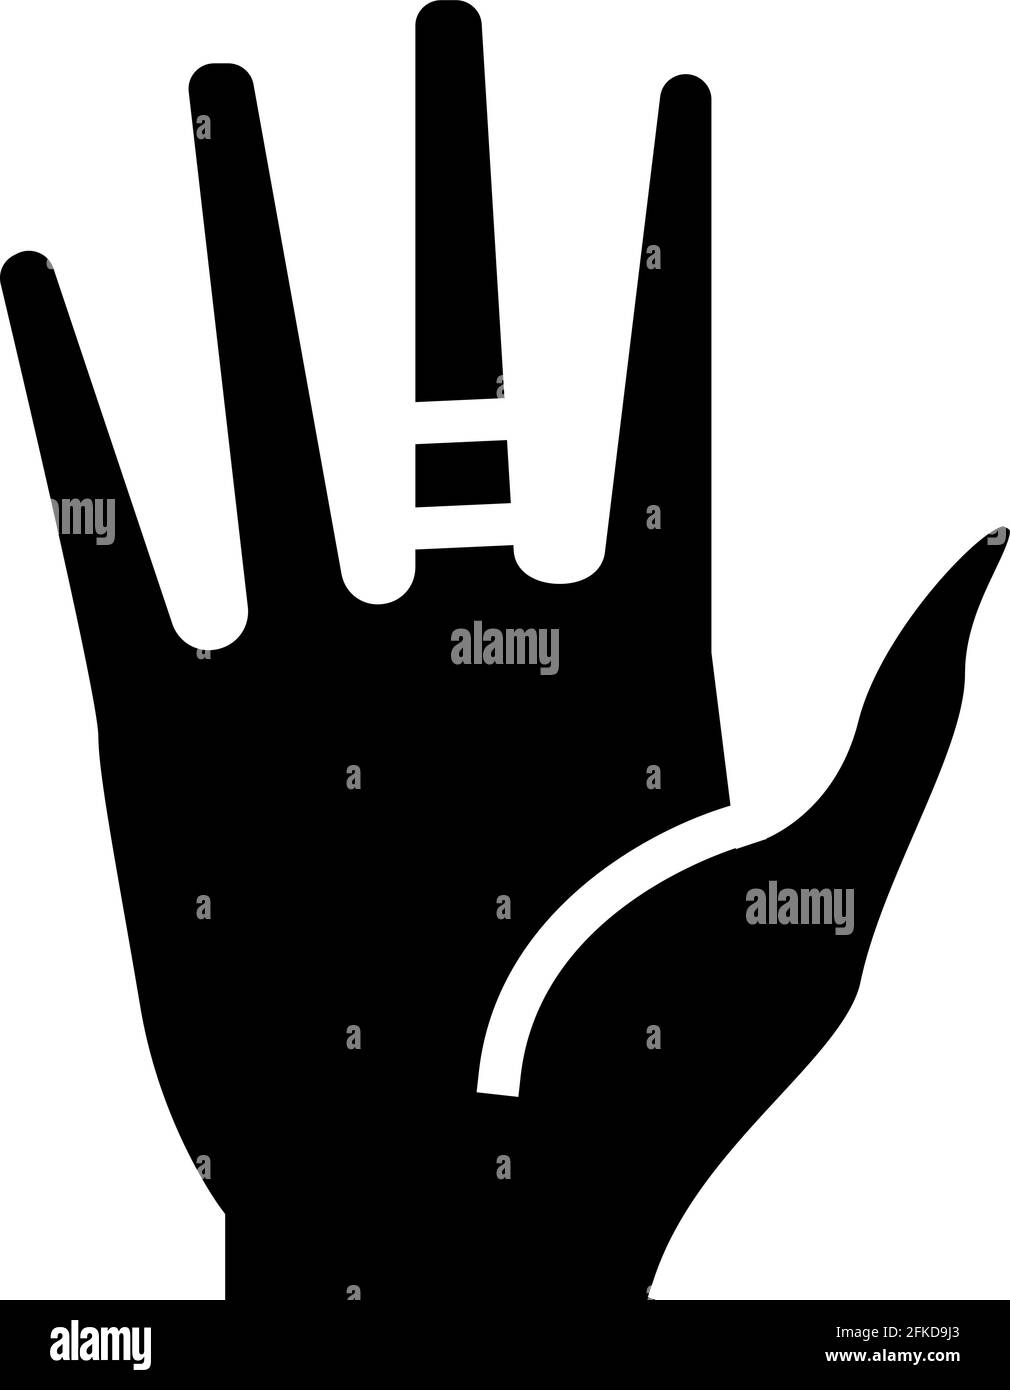 Abbildung des Symbols für Kontaktdermatitis-Glyphen Stock Vektor